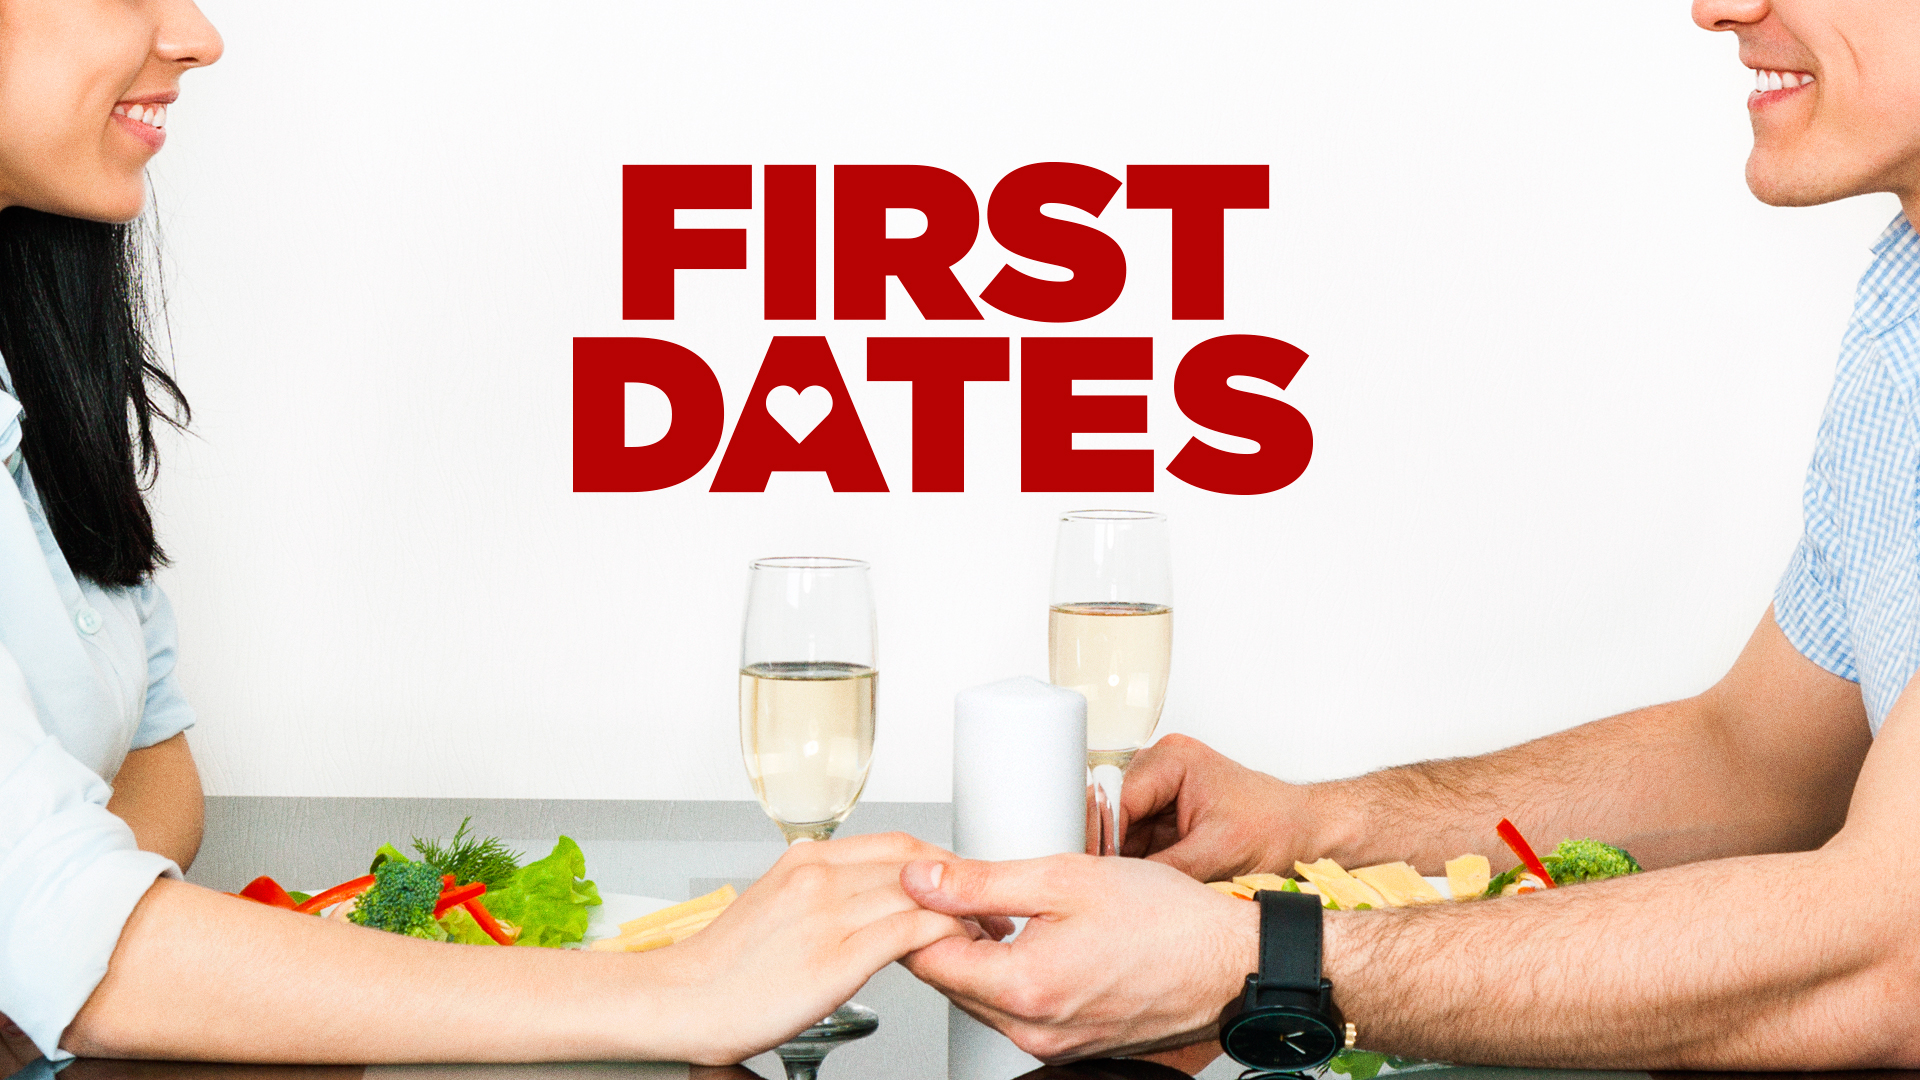 First dates online